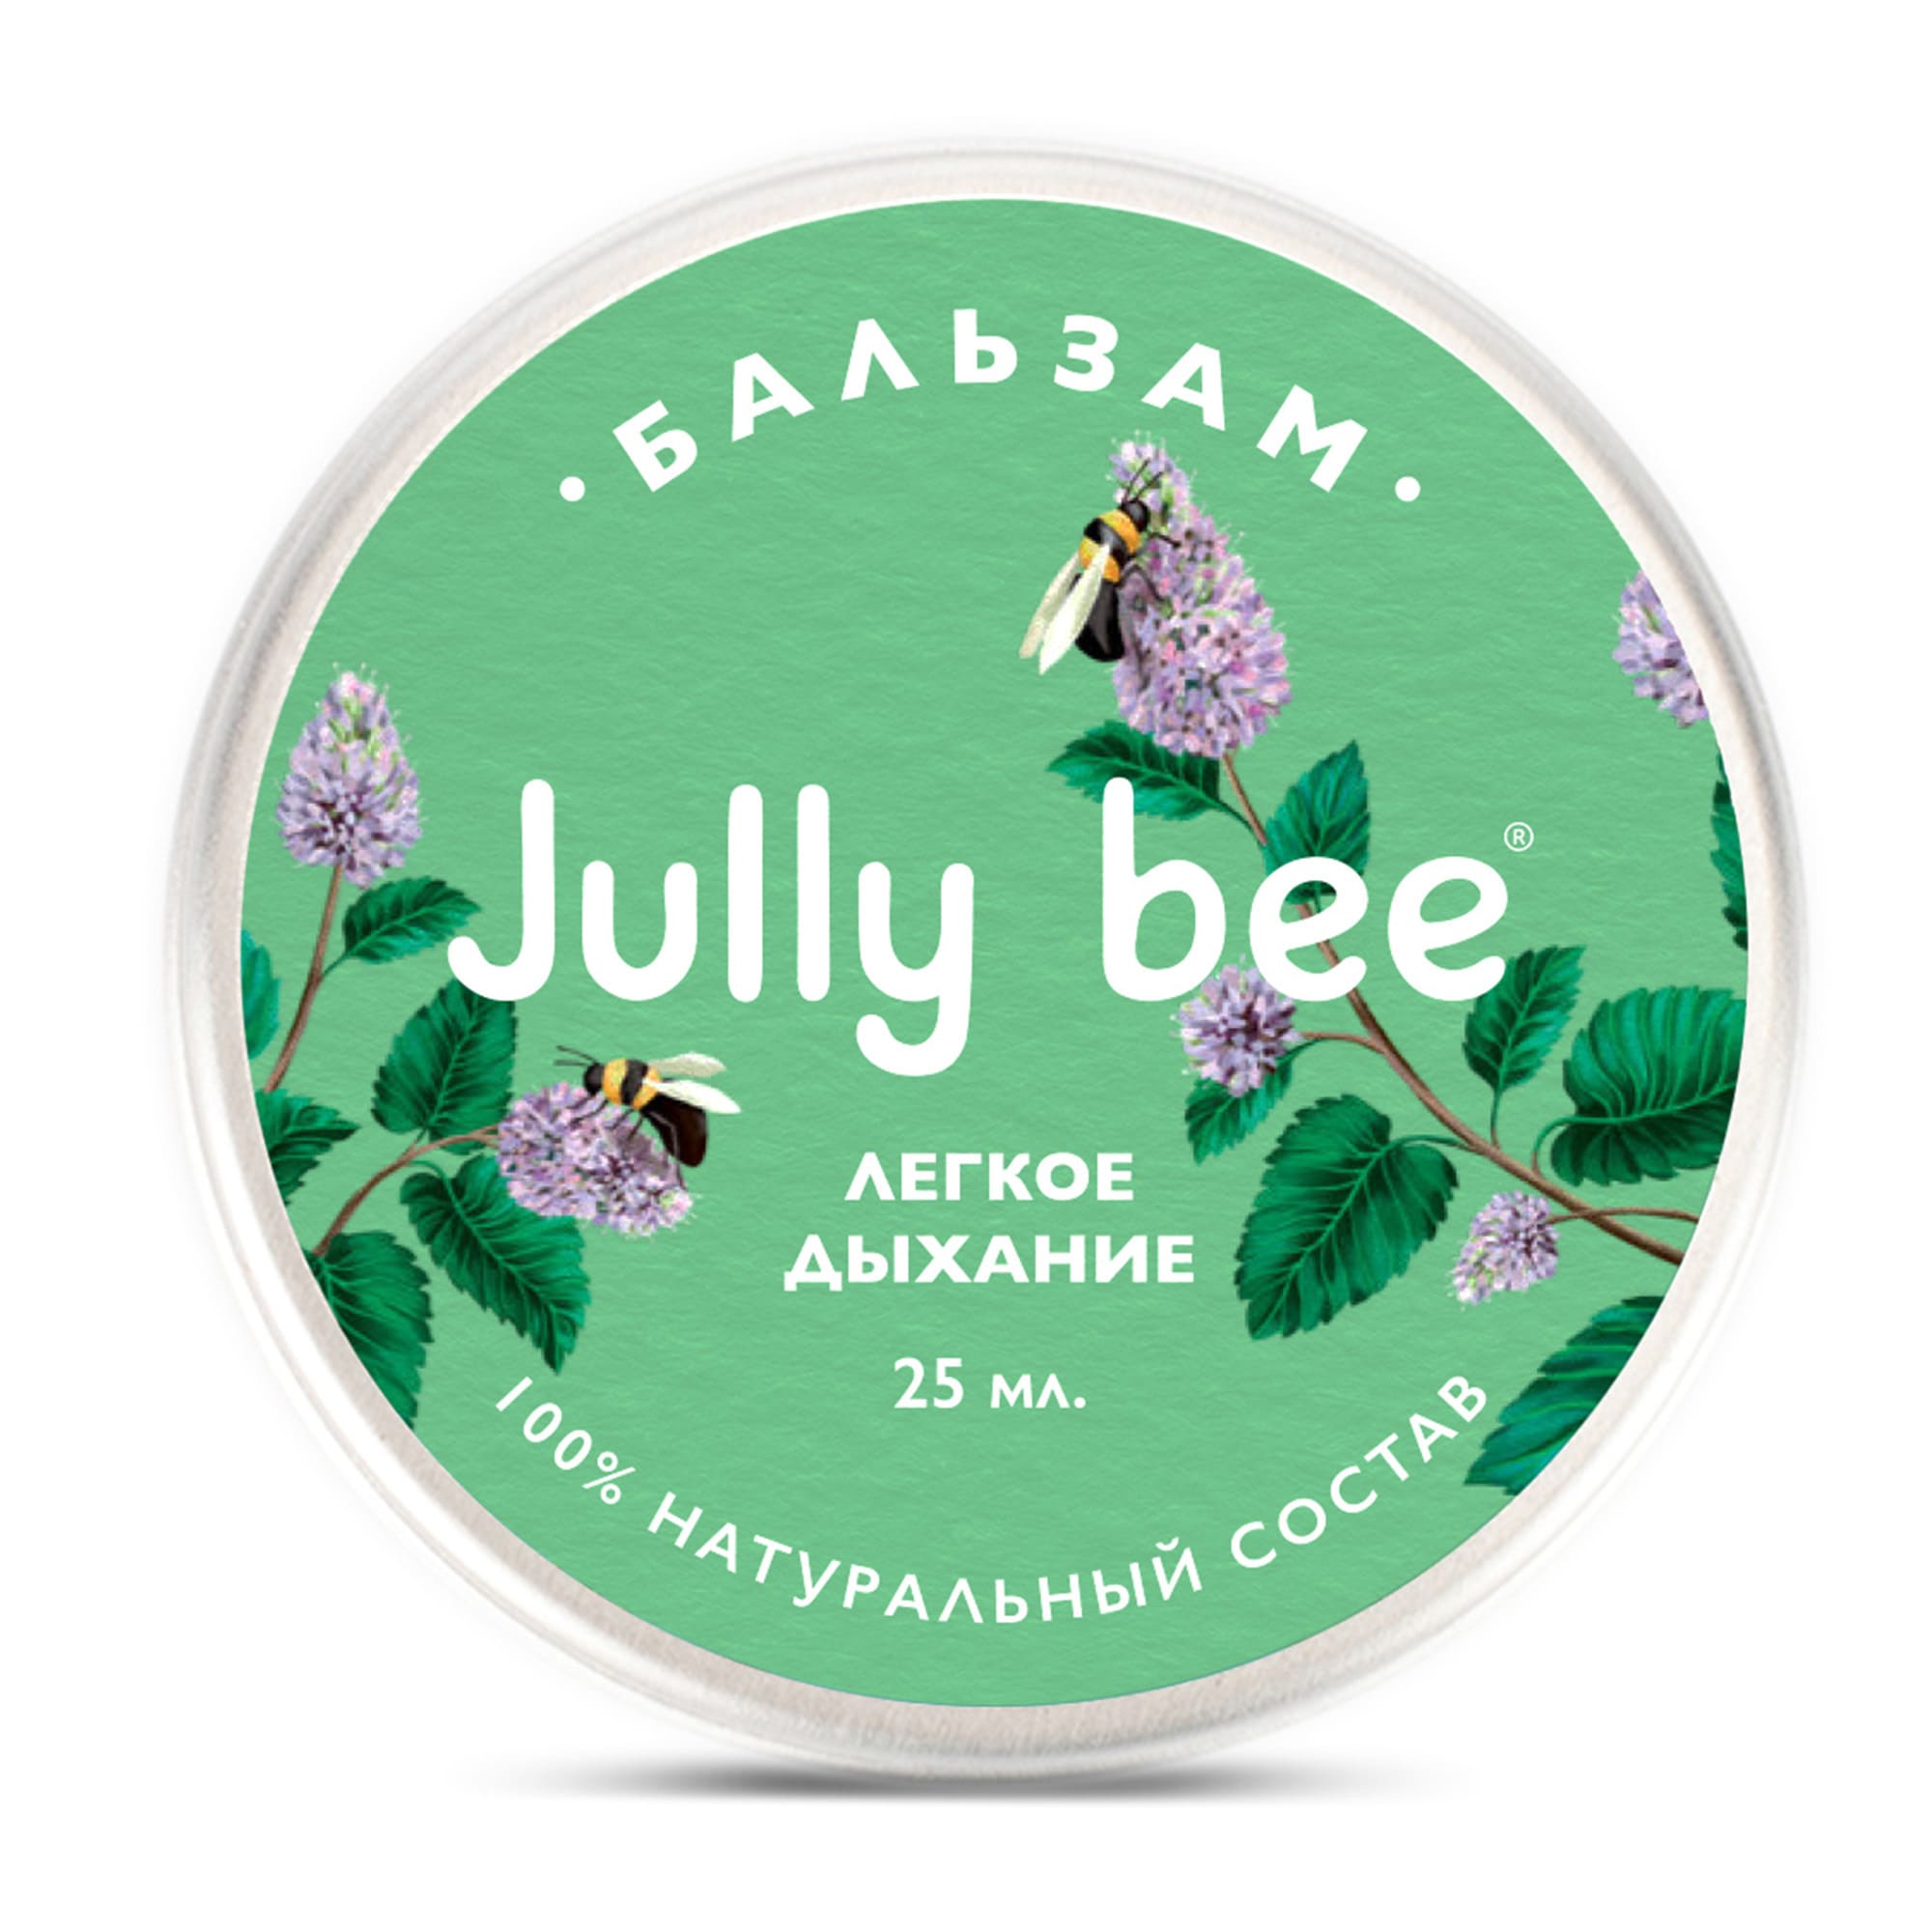 Бальзам для тела Jully Bee легкое дыхание, лечебный, 25 мл авен трикзера нутришн молочко для тела легкое питательное 400мл